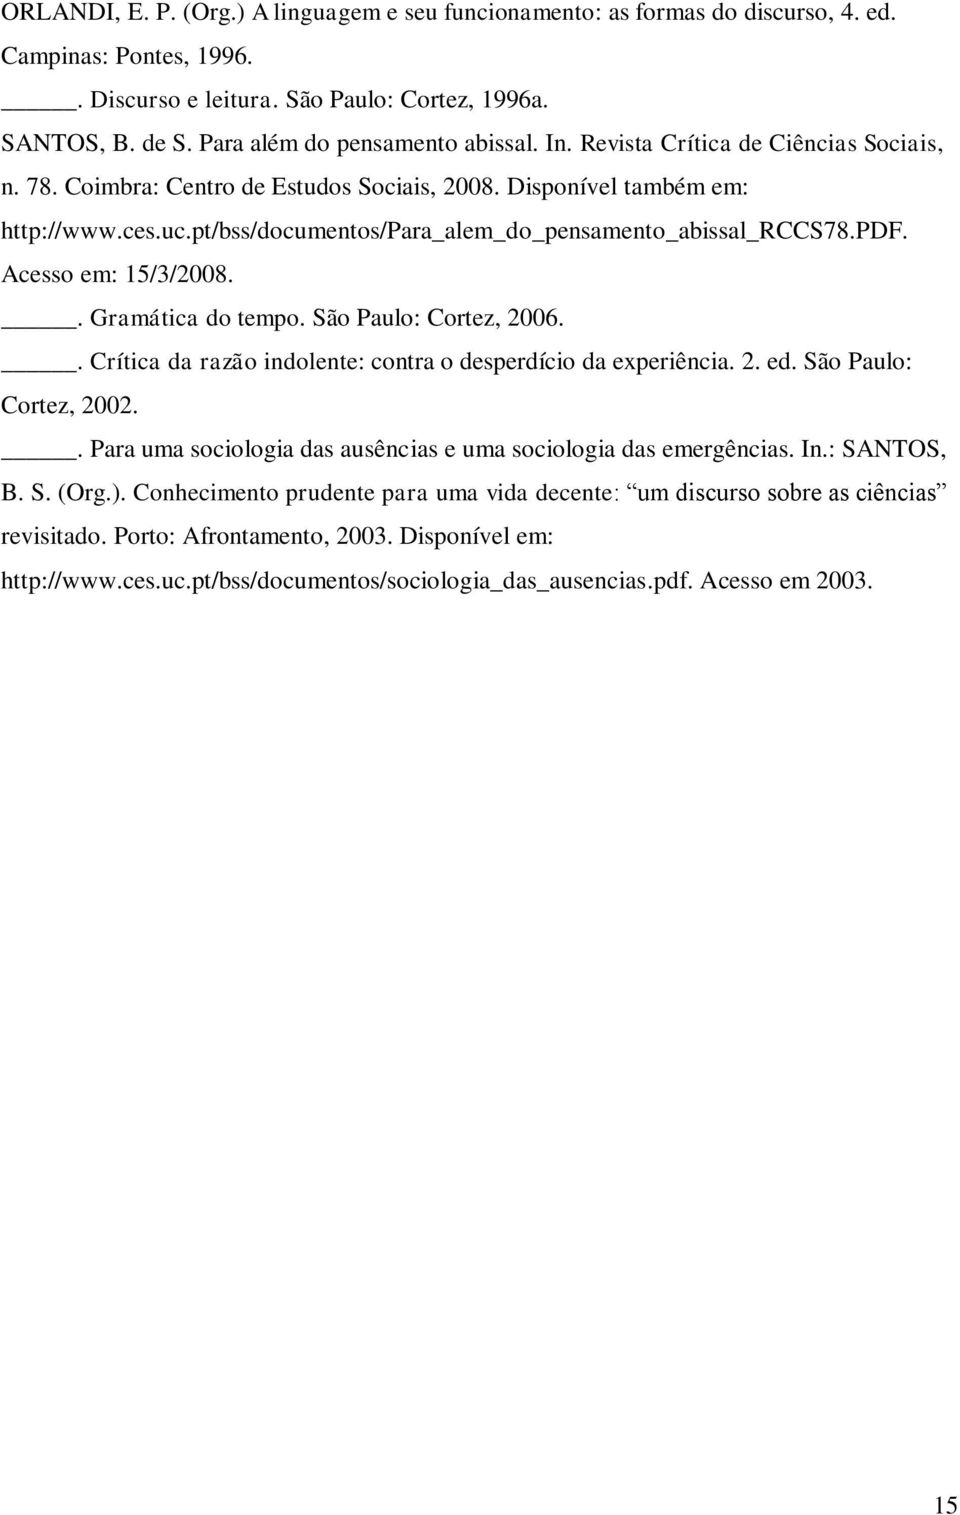 pt/bss/documentos/para_alem_do_pensamento_abissal_rccs78.pdf. Acesso em: 15/3/2008.. Gramática do tempo. São Paulo: Cortez, 2006.. Crítica da razão indolente: contra o desperdício da experiência. 2. ed.